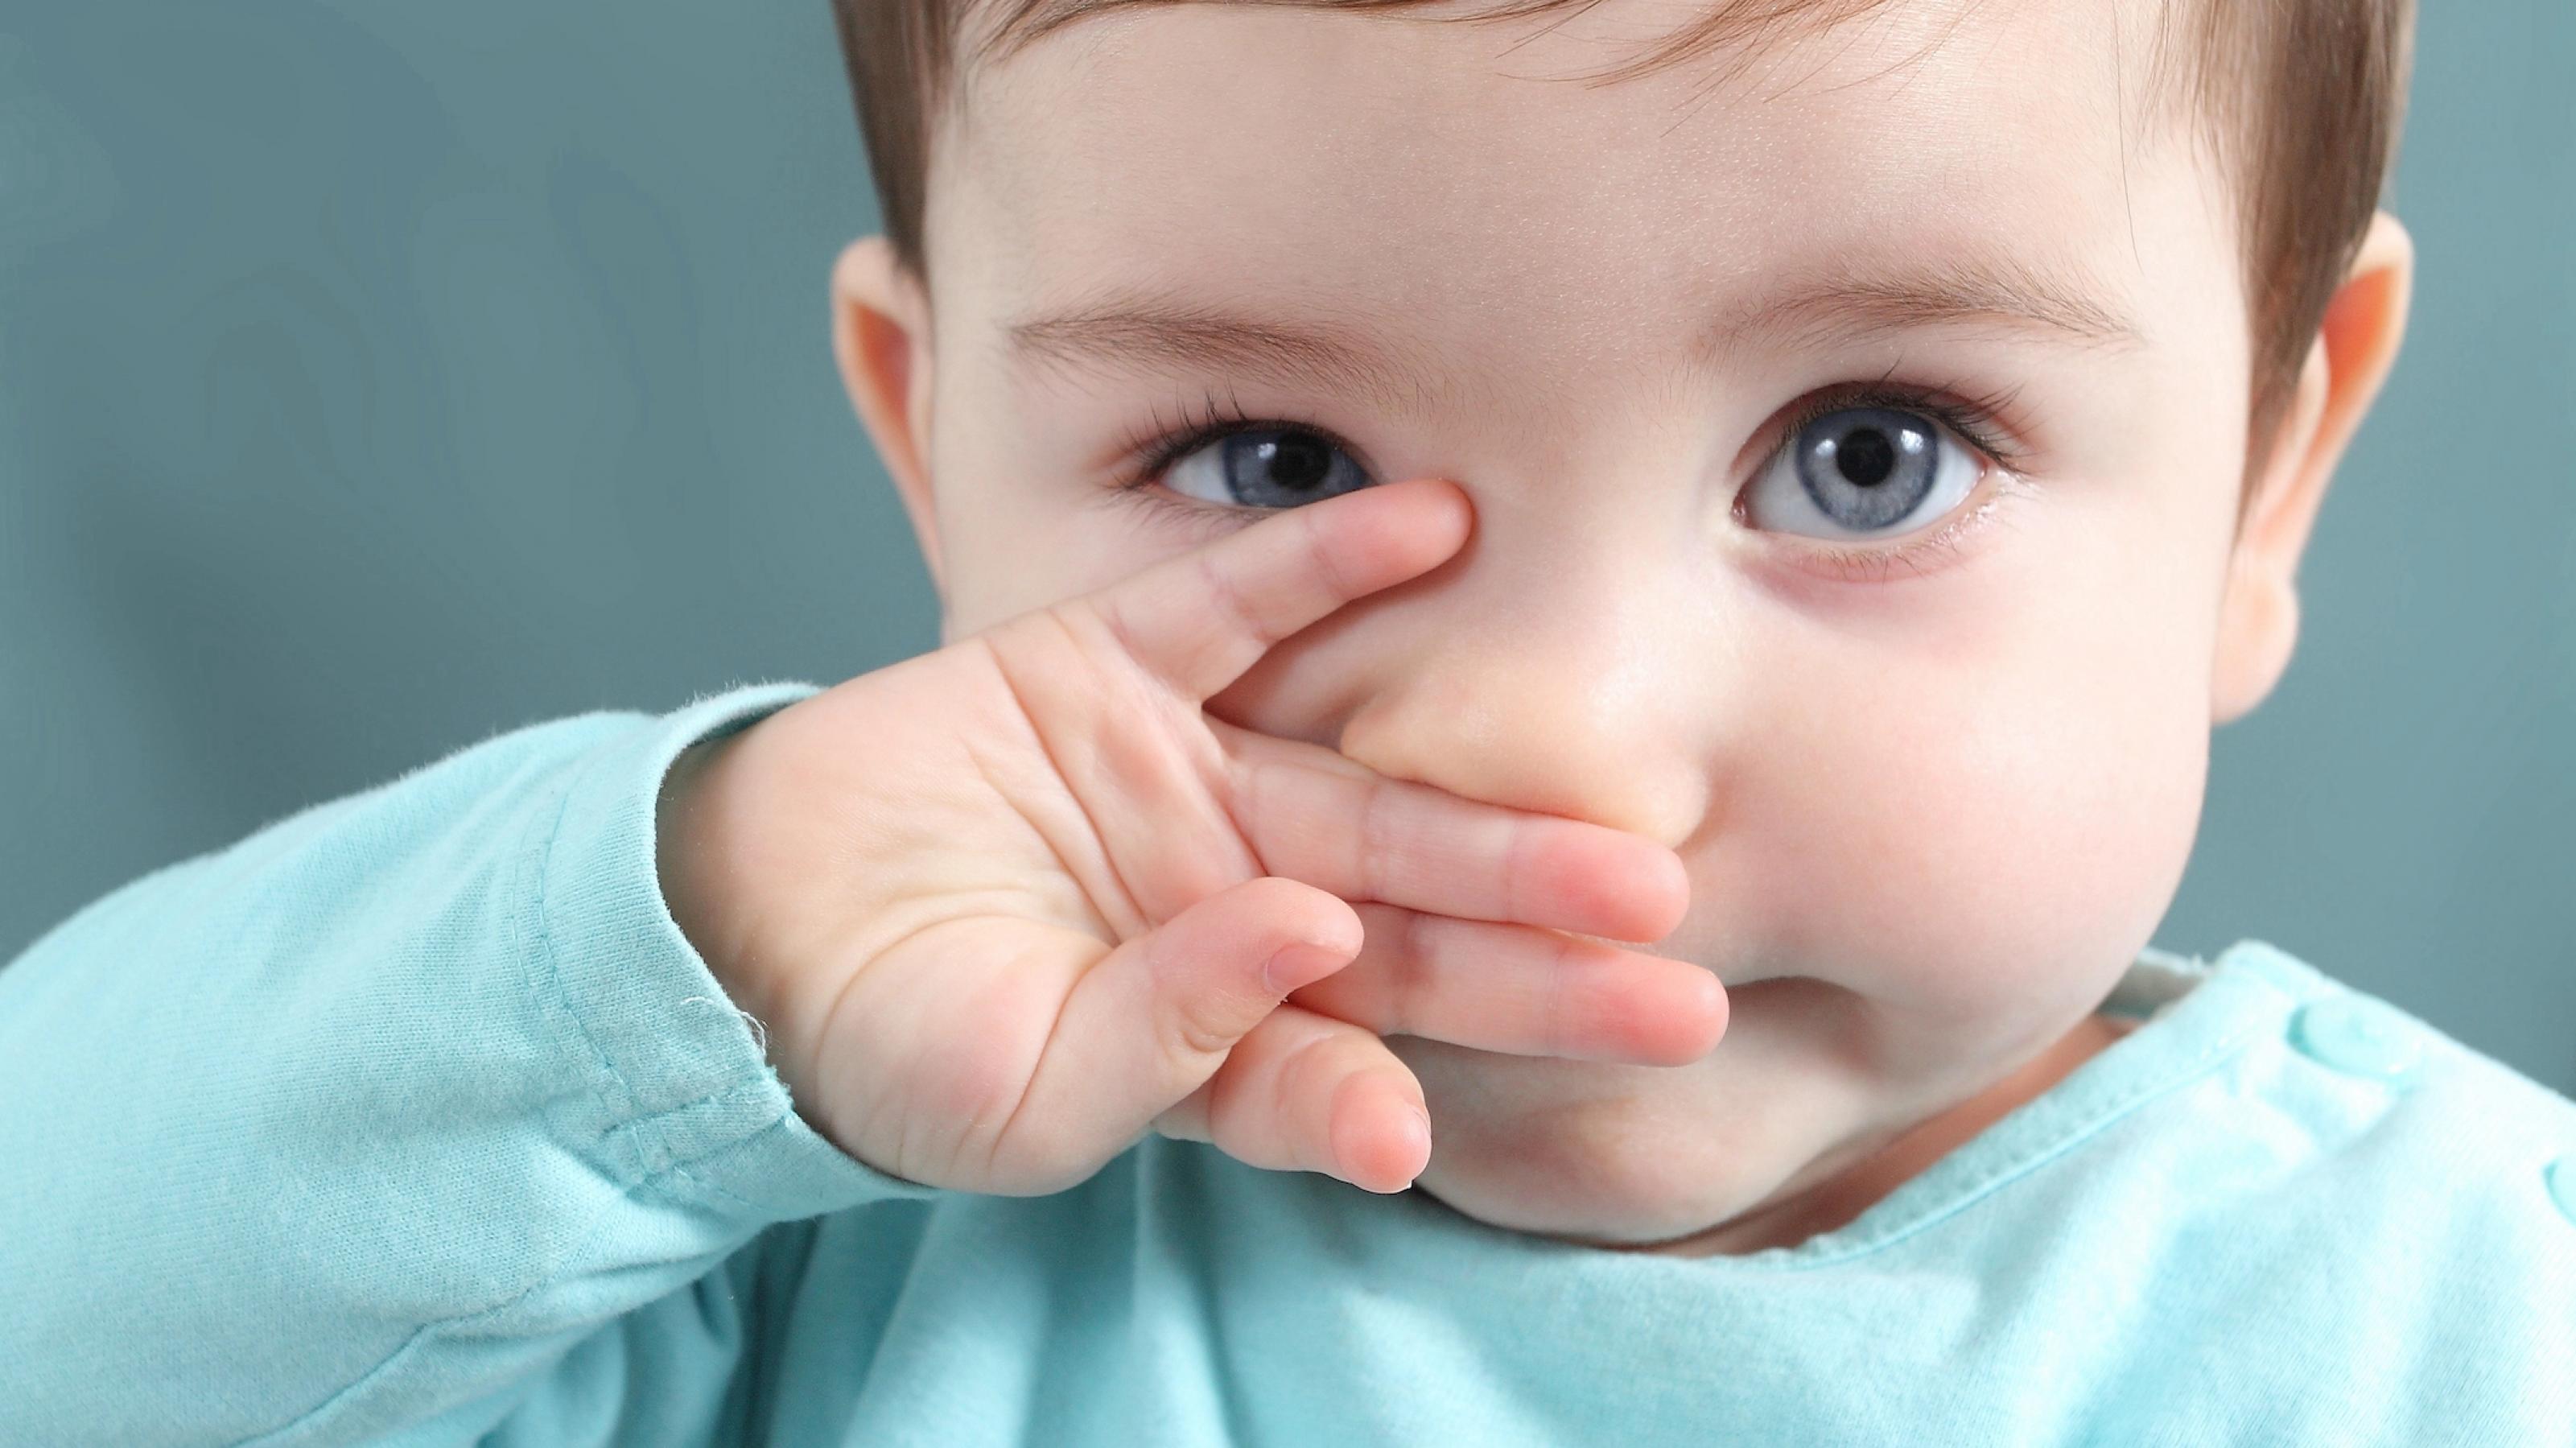 Ein kleines Kind mit blauen Augen und glatten braunen Haaren schaut in die Kamera. Mit der rechte Hand wischt es sich gerade über die Nase.